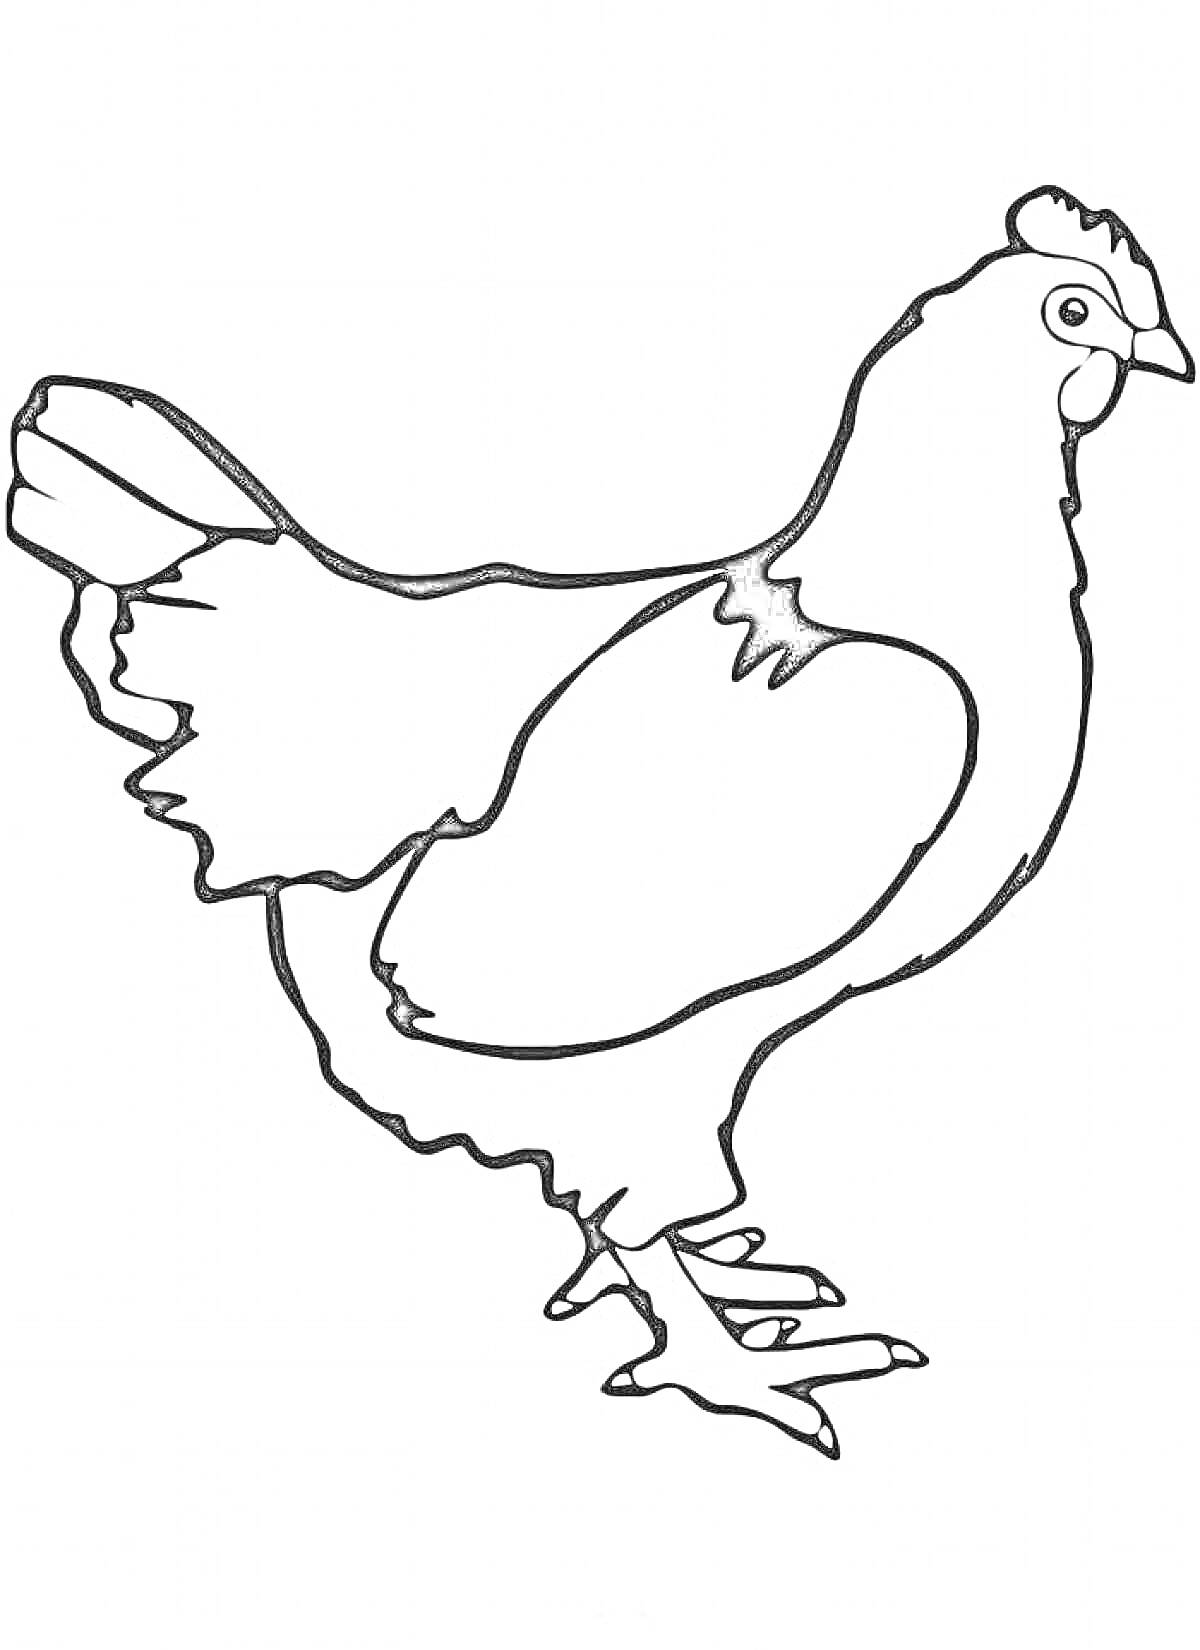 Раскраска Курица с контурным изображением, вид сбоку